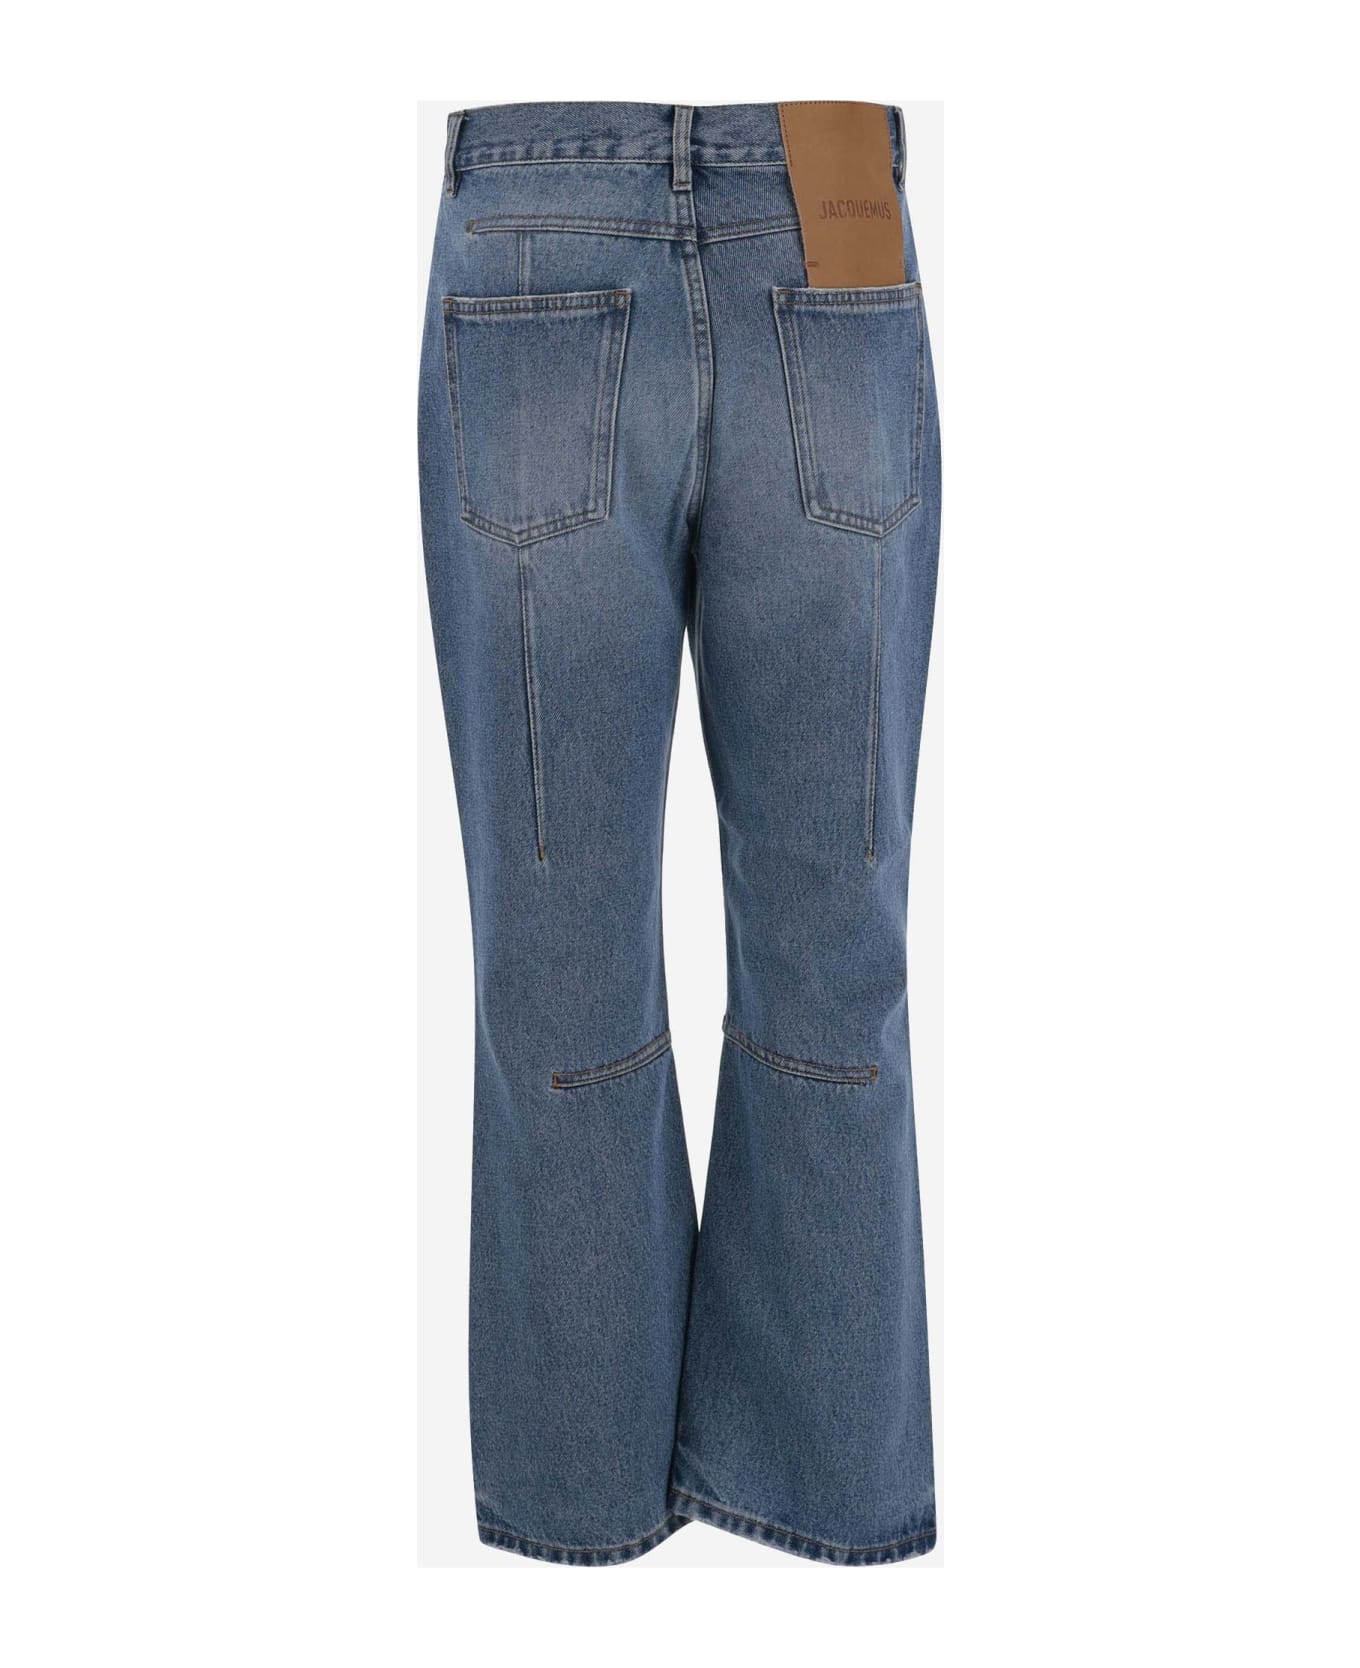 Jacquemus Cotton Denim Jeans - 33C BLUE/TABAC